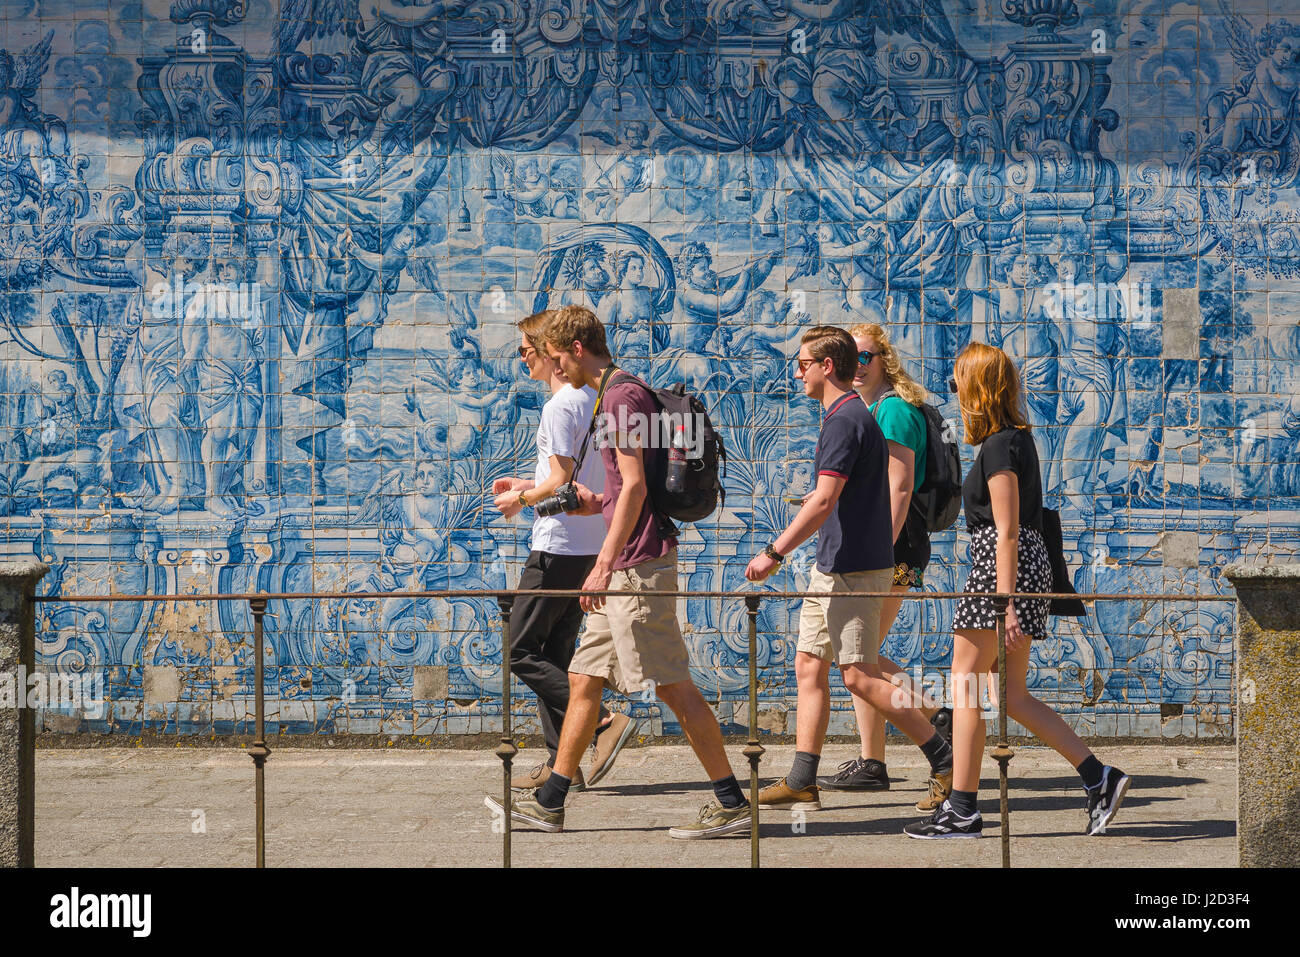 Giovani Portogallo, un gruppo di giovani cammina attraverso un muro nel chiostro della cattedrale se decorato con piastrelle azzurre azulejos, Porto, Portogallo, Foto Stock